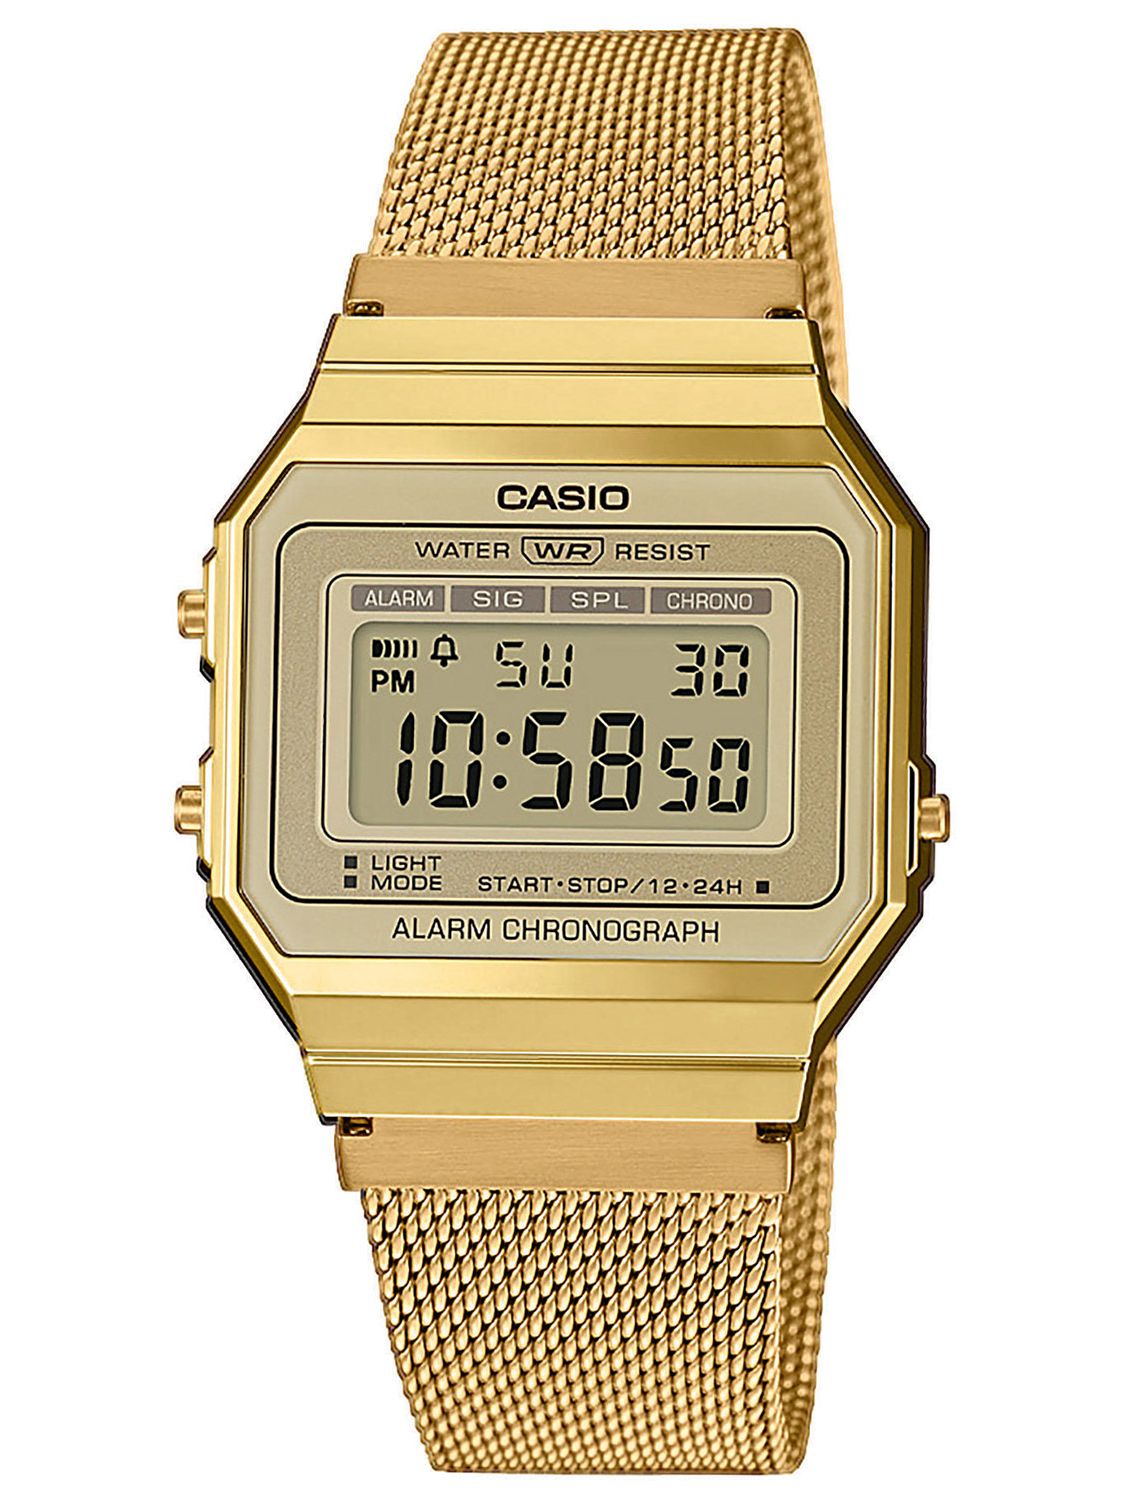 casio gold classic digital watch